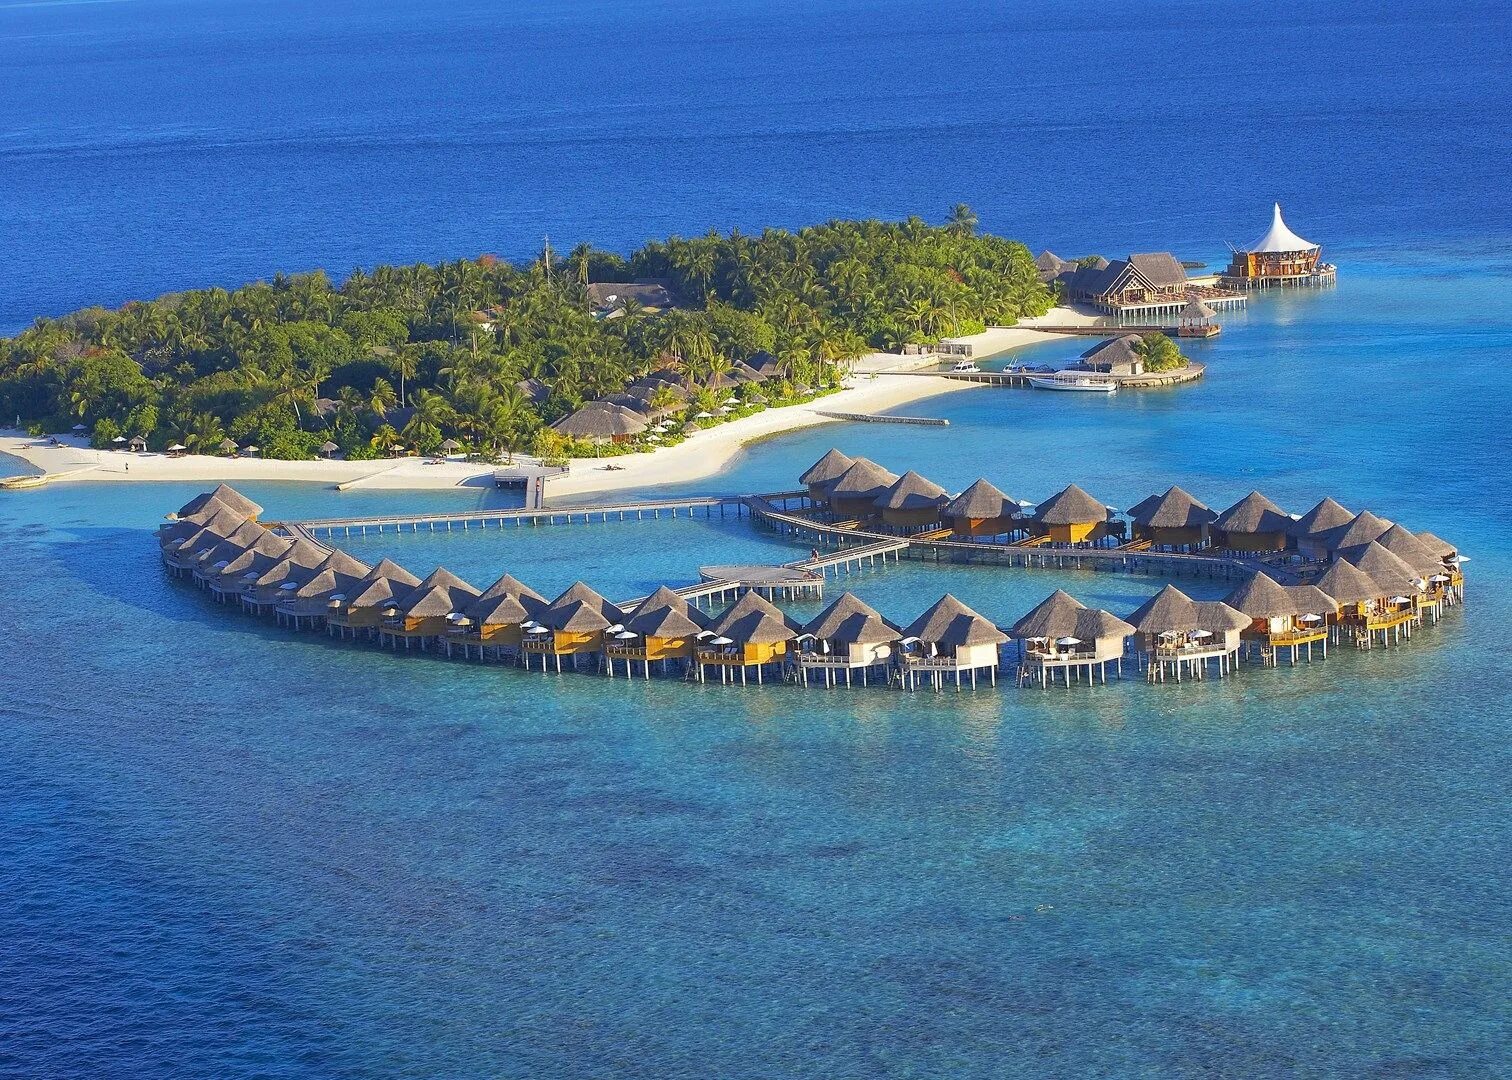 Remote island. Мальдивы архипелаг. Остров Барос. Остров Барос Мальдивы фото. Остров Алимата Мальдивы.